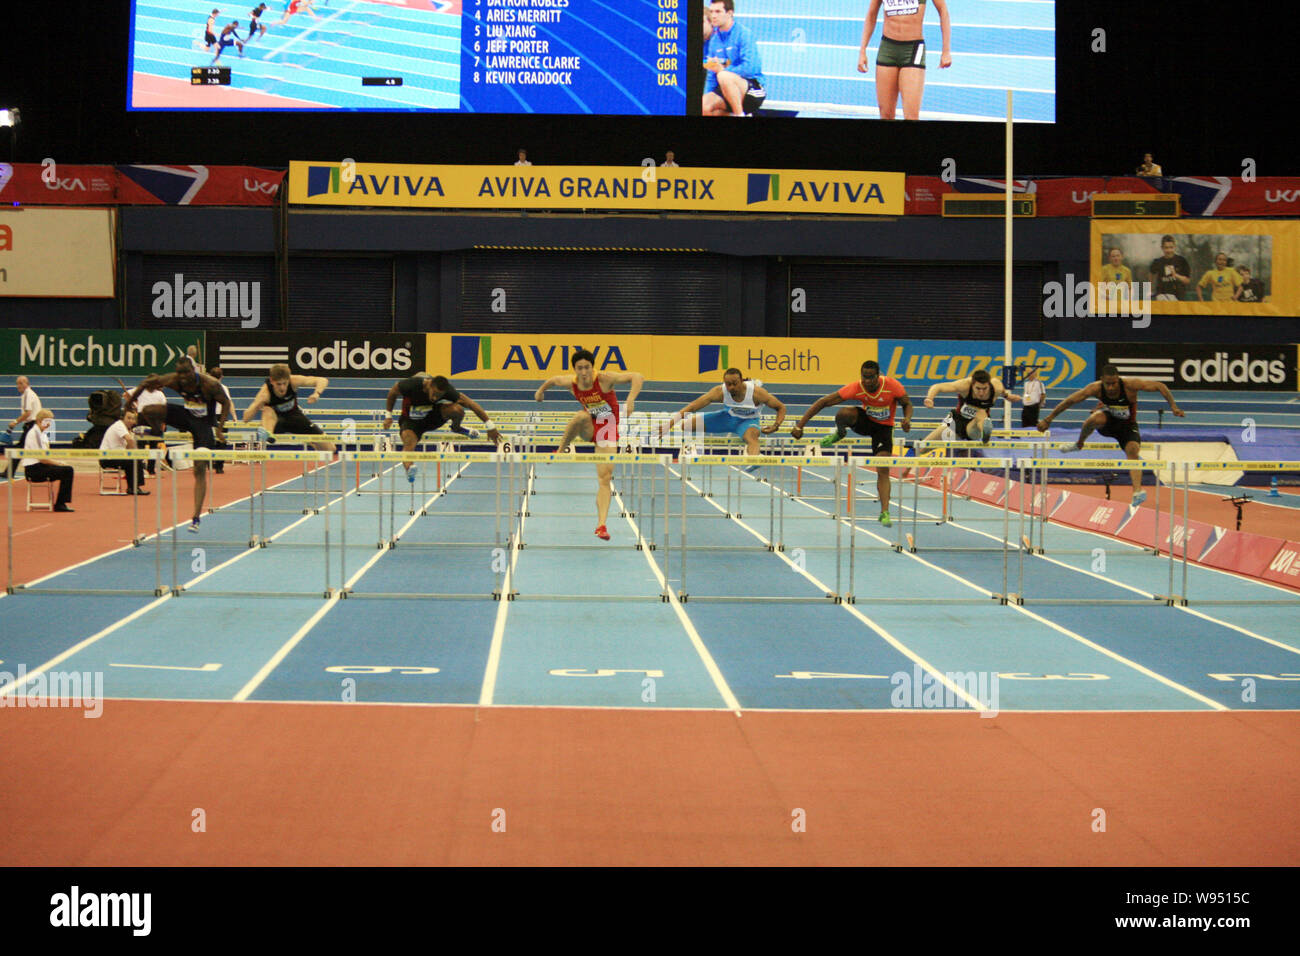 China Liu Xiang, vierten linken und anderen hurdlers konkurrieren in der mens 60 m Hürden Finale während der Aviva Grand Prix Leichtathletik-meeting am Nationalen Stockfoto